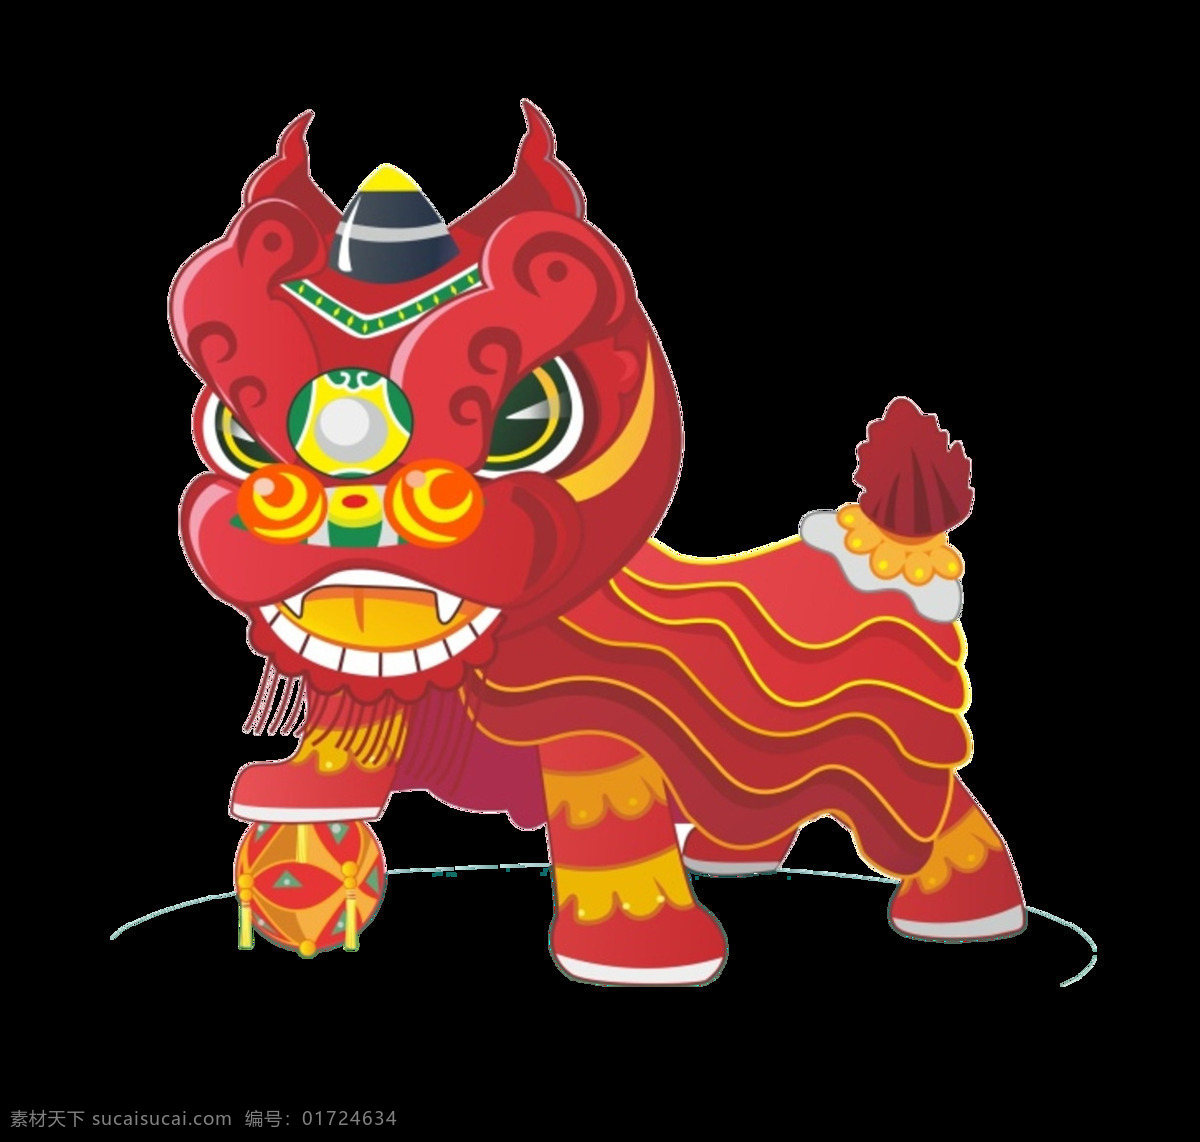 手绘 新年 舞狮 元素 传统文化 贺新年 卡通人物 卡通舞狮元素 卡通元素 狮子 舞狮素材 舞狮舞龙 元旦素材 中国风素材 中式习俗